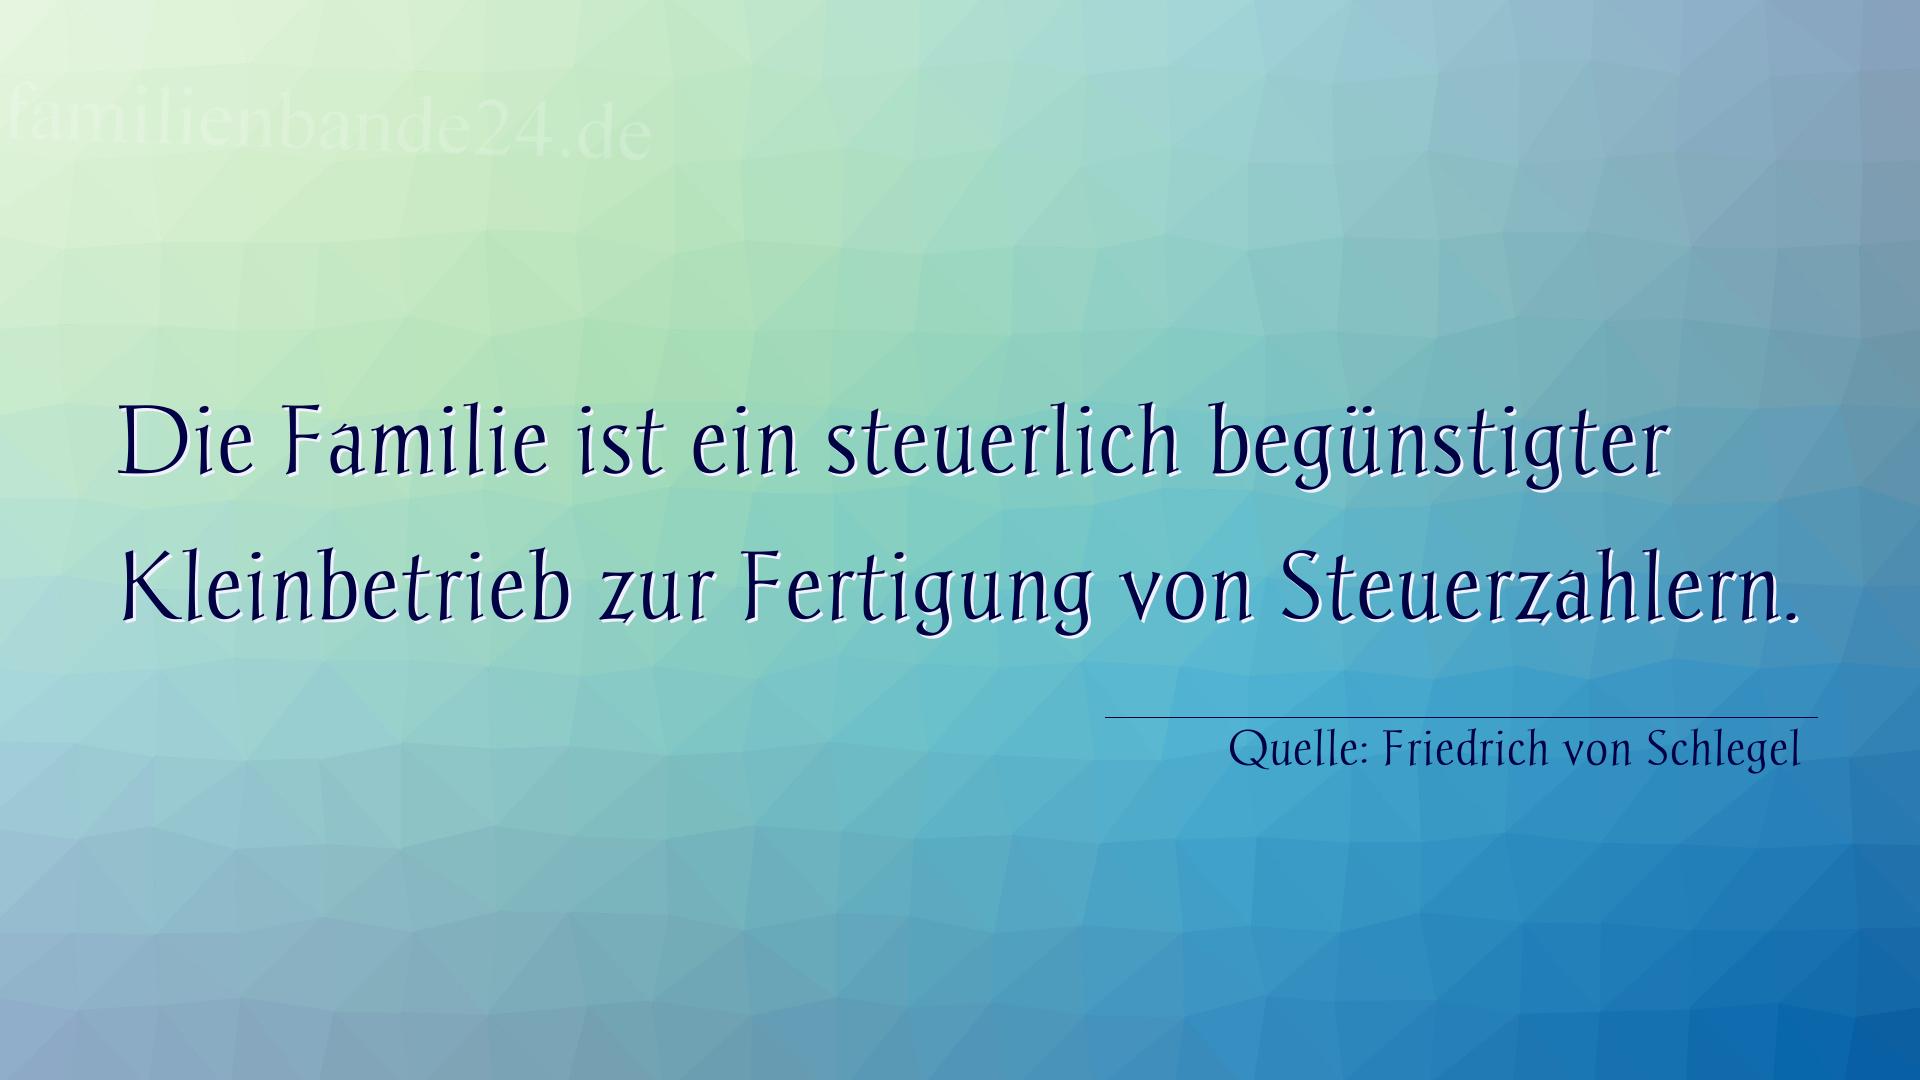 Familienspruch Nr. 355, Quelle Friedrich von Schlegel